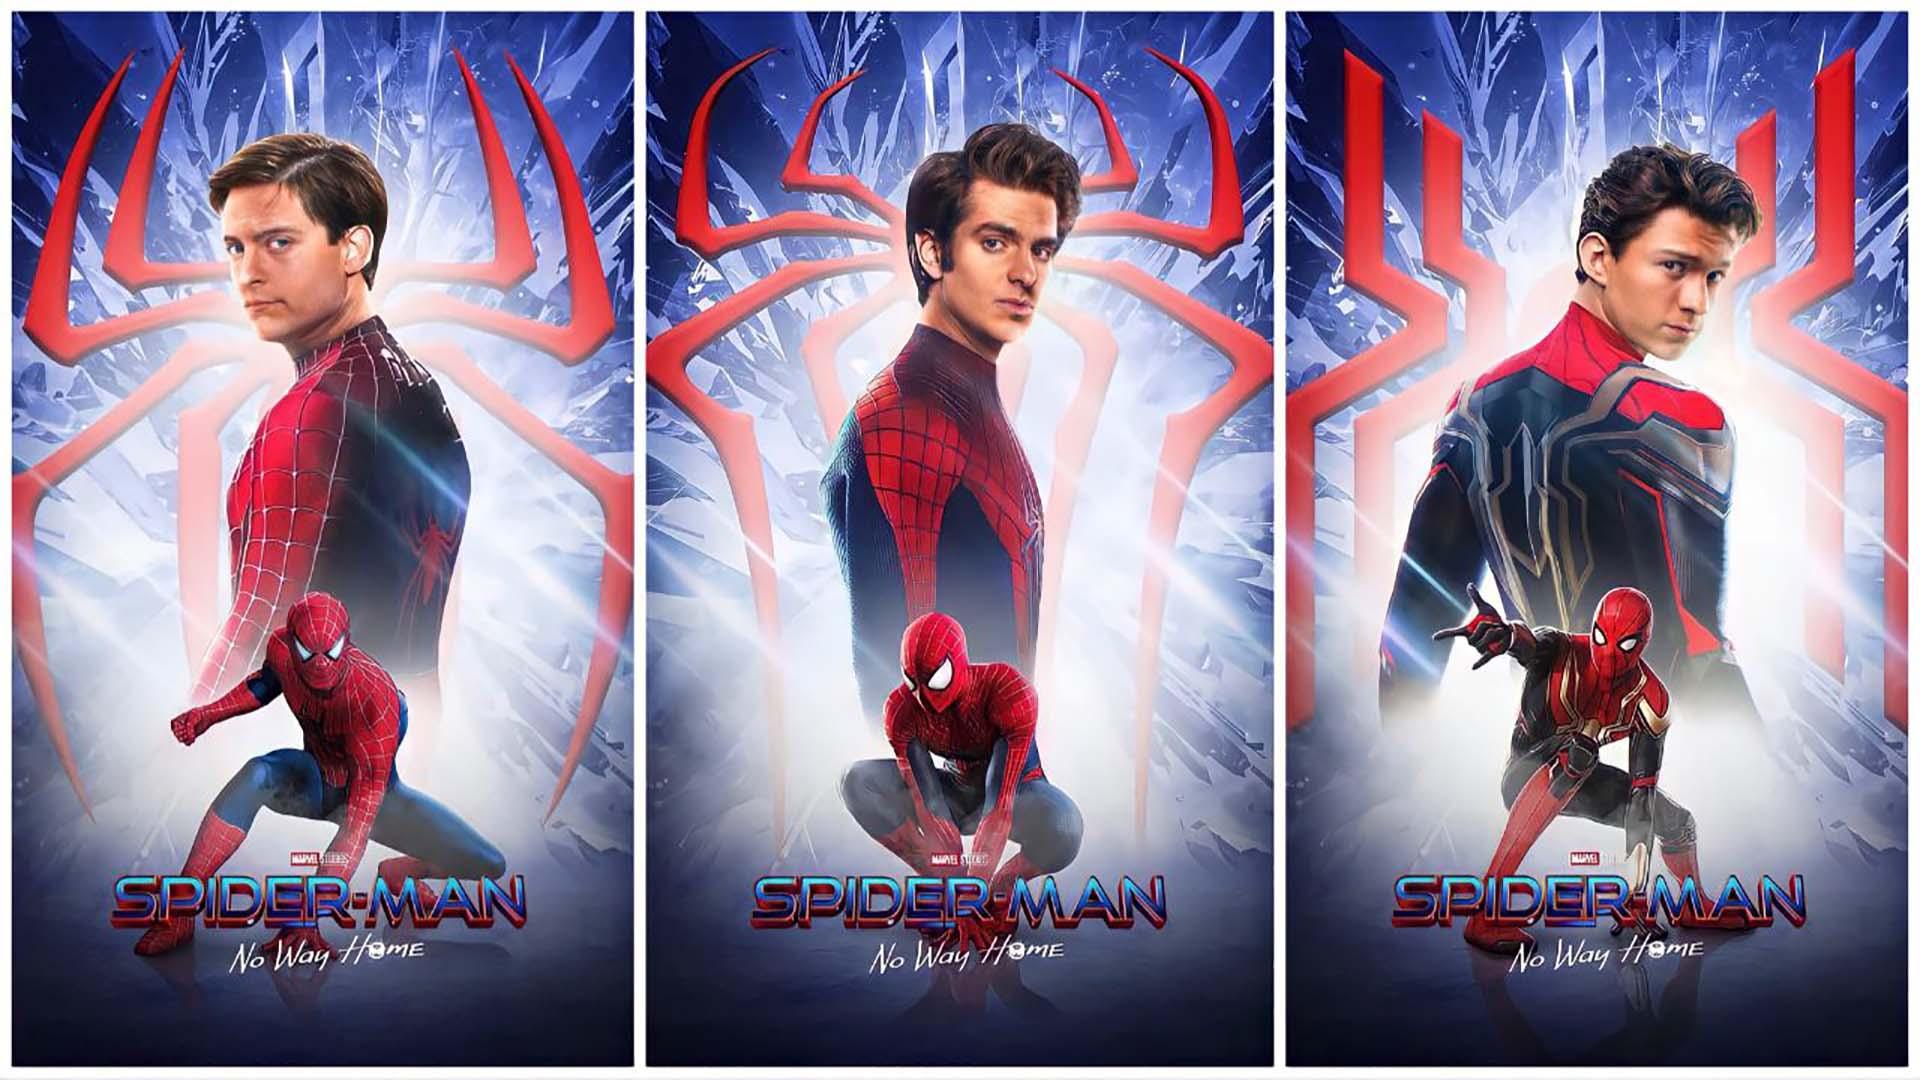 سه نسخه متفاوت مرد عنکبوتی با بازی تام هالند، اندرو گارفیلد و توبی مگوایر در فن آرت فیلم Spider-Man: No Way Home